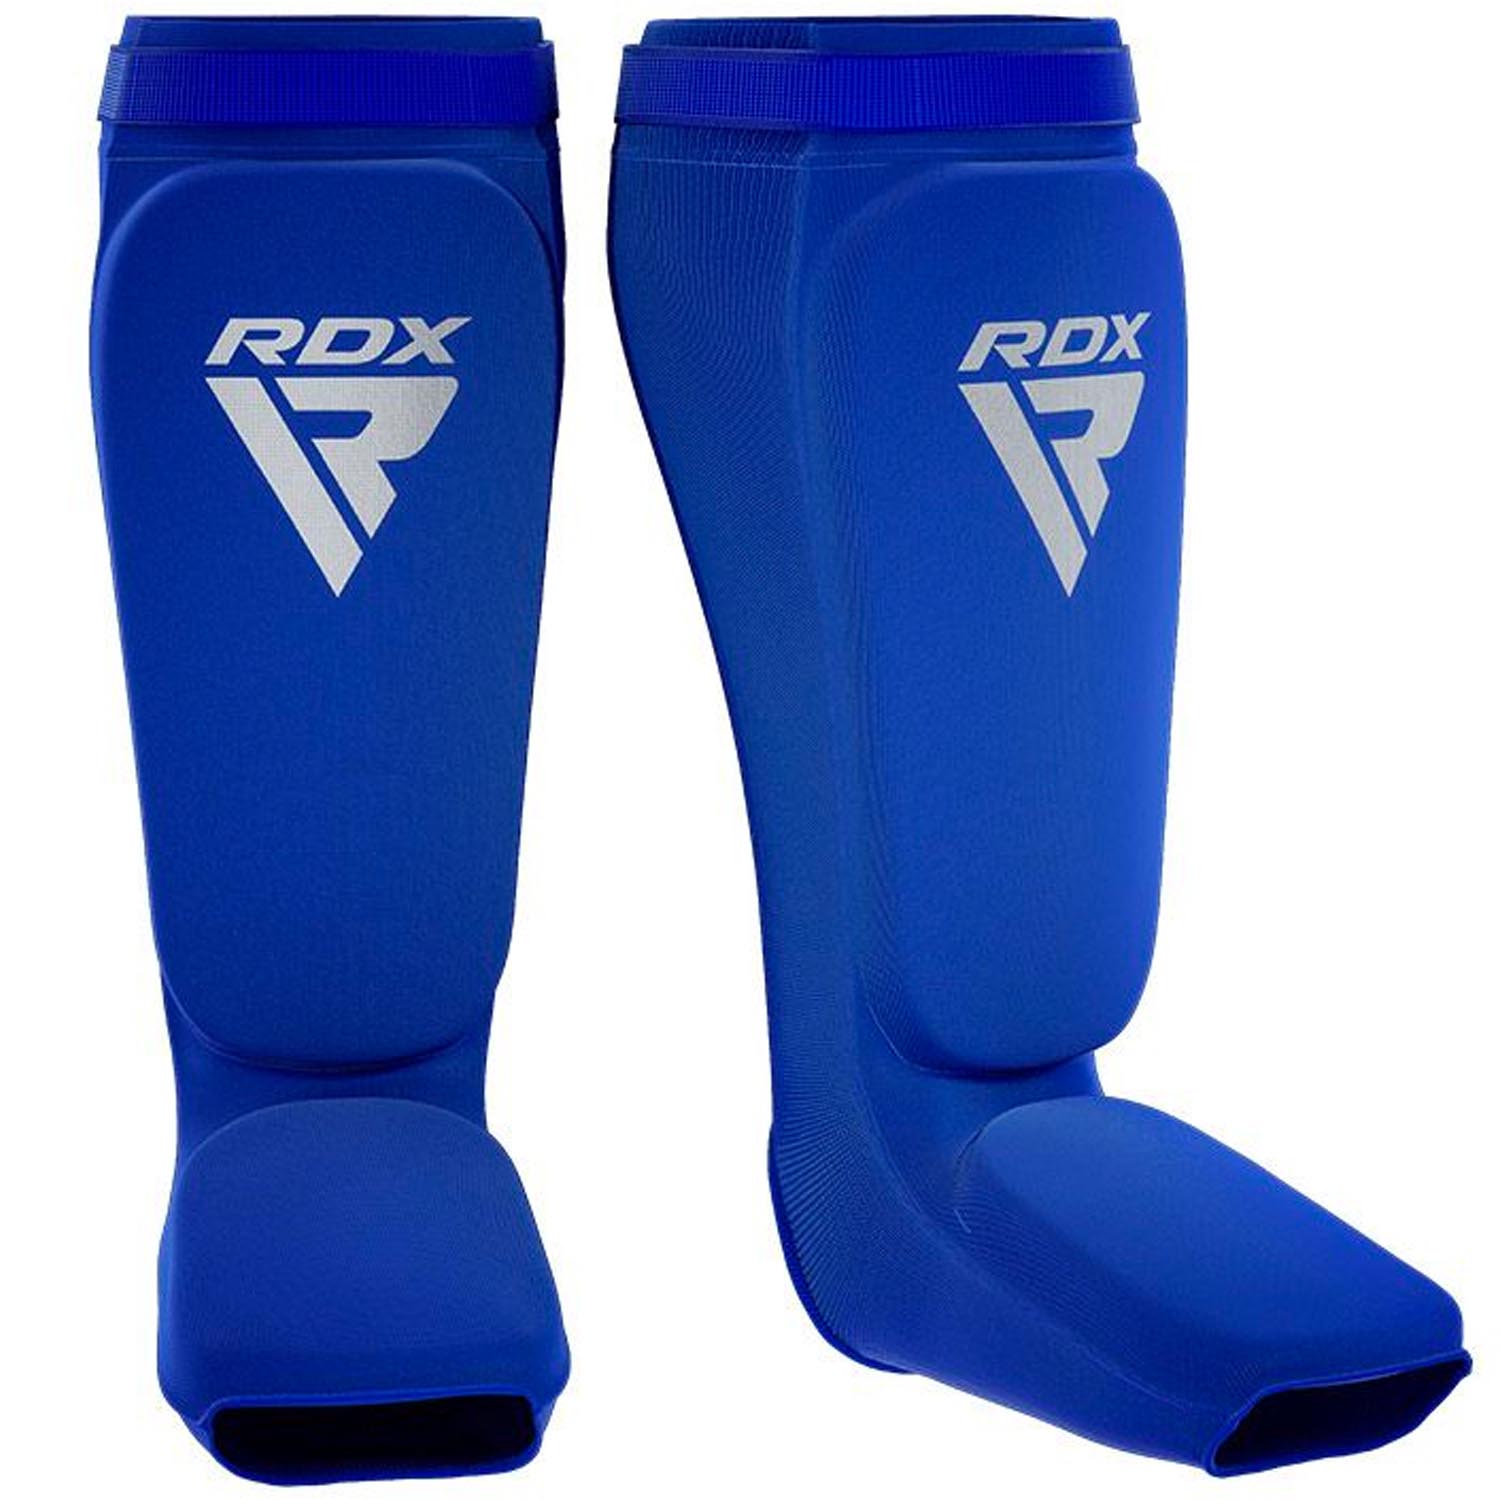 RDX Schienbeinschoner, blau-weiß